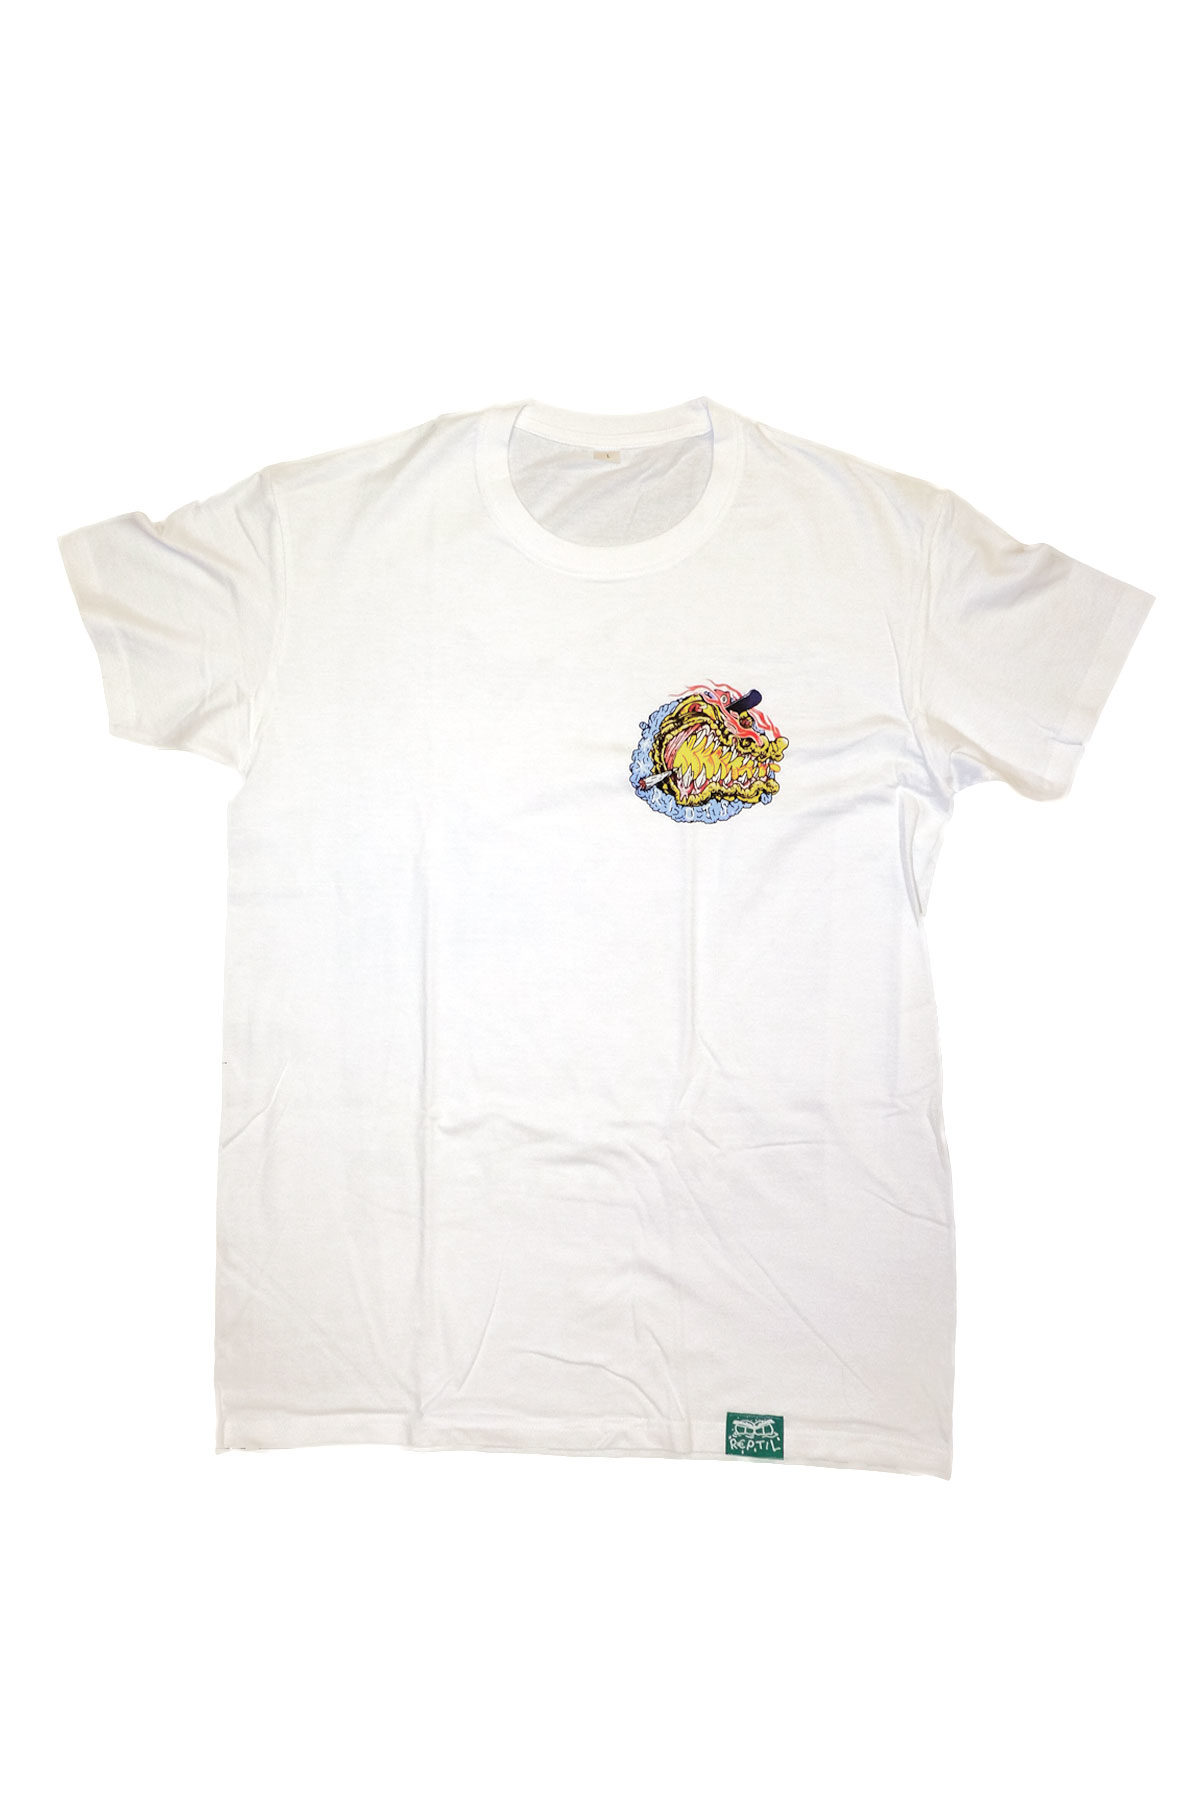 Reptil 1394 T-Shirt